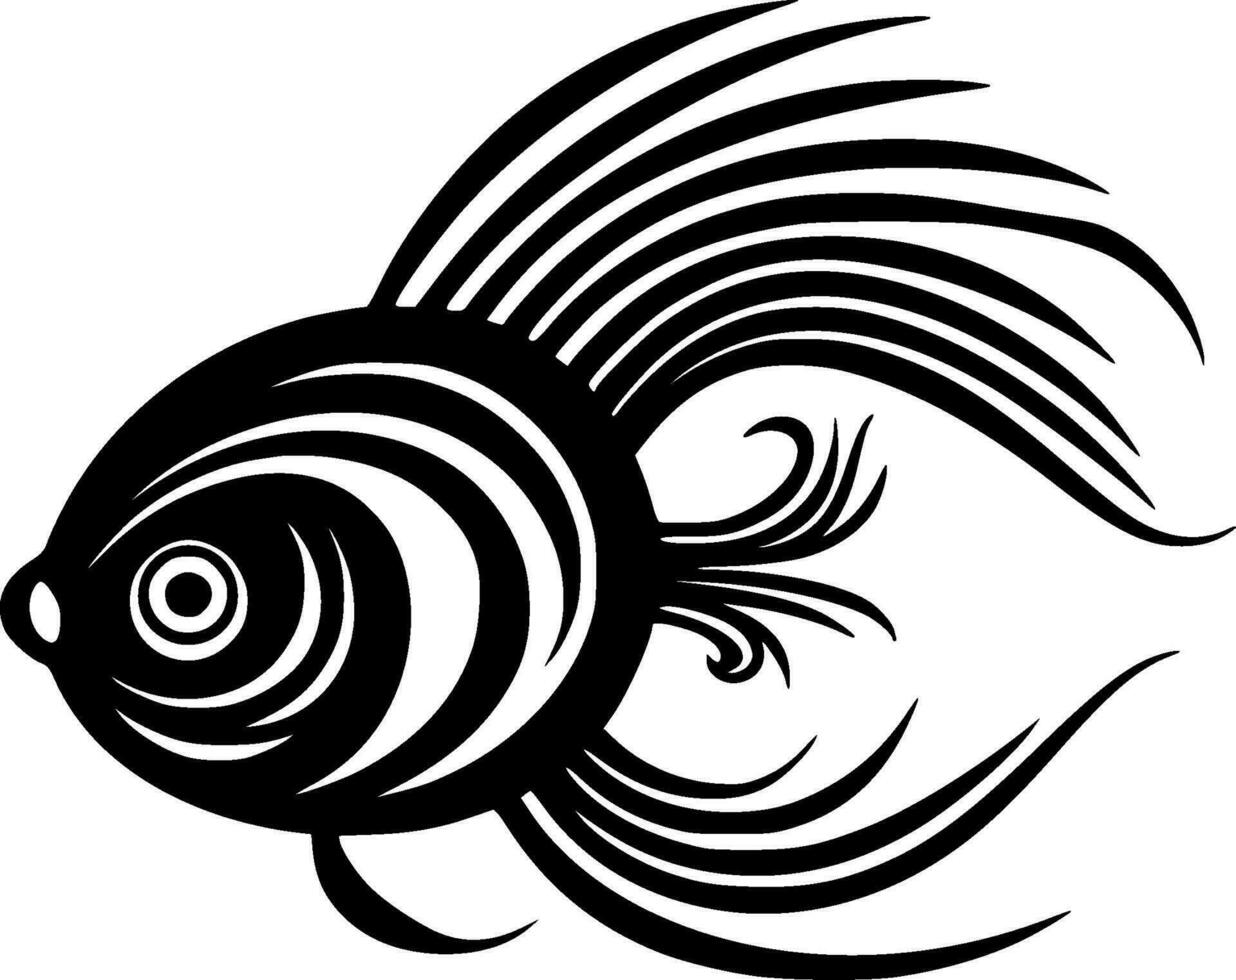 poisson - minimaliste et plat logo - vecteur illustration